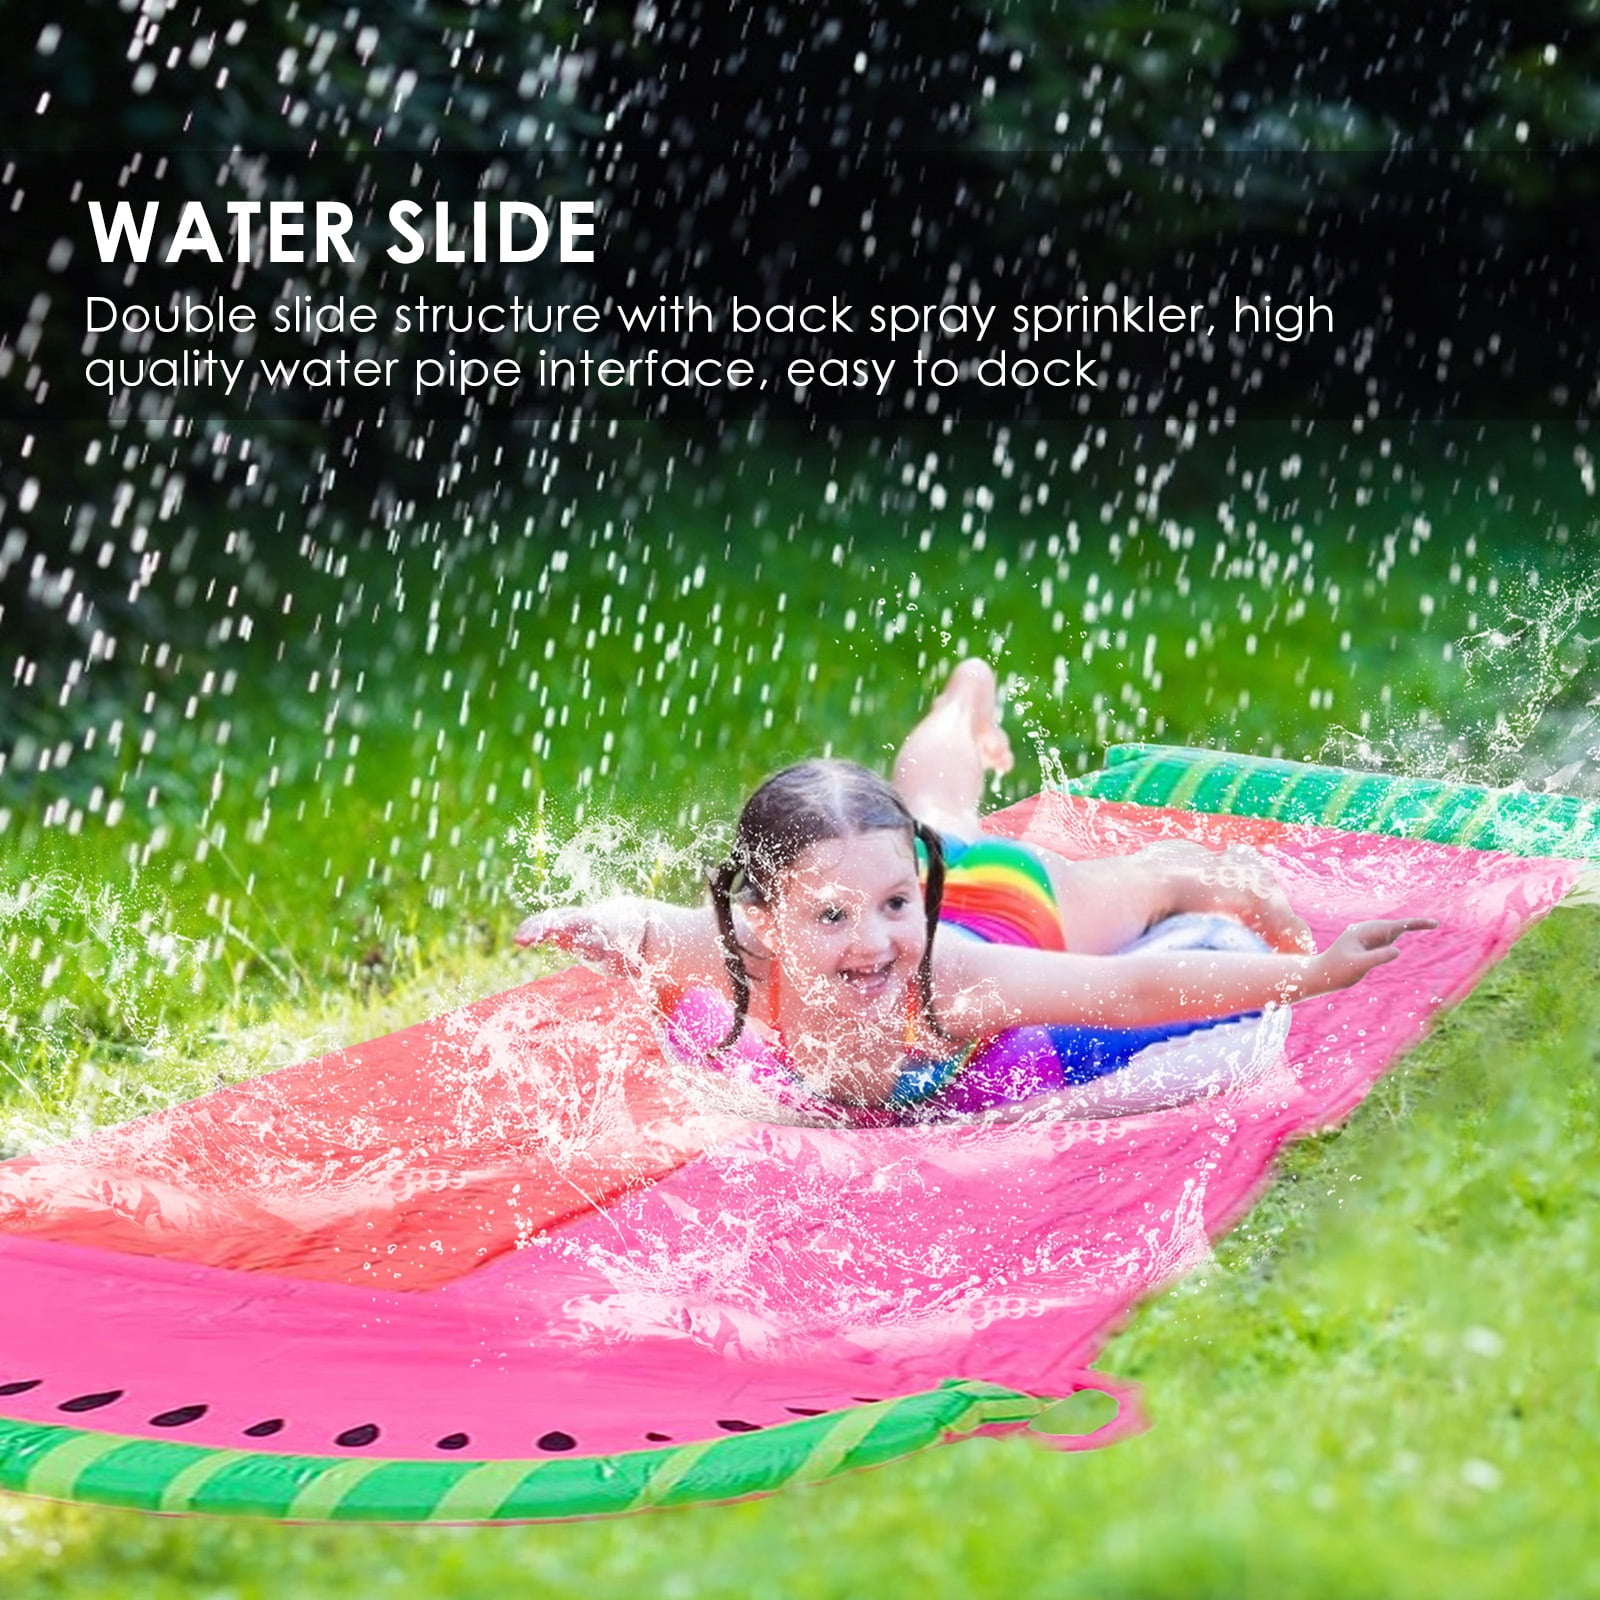 Double Lane Water Splash Slide Kids Lawn Water Slip Garden Water Toys Inflatable Waterslide For Garden Outdoor AEROBATICS Water Slide 480x140cm Includes Two Mats